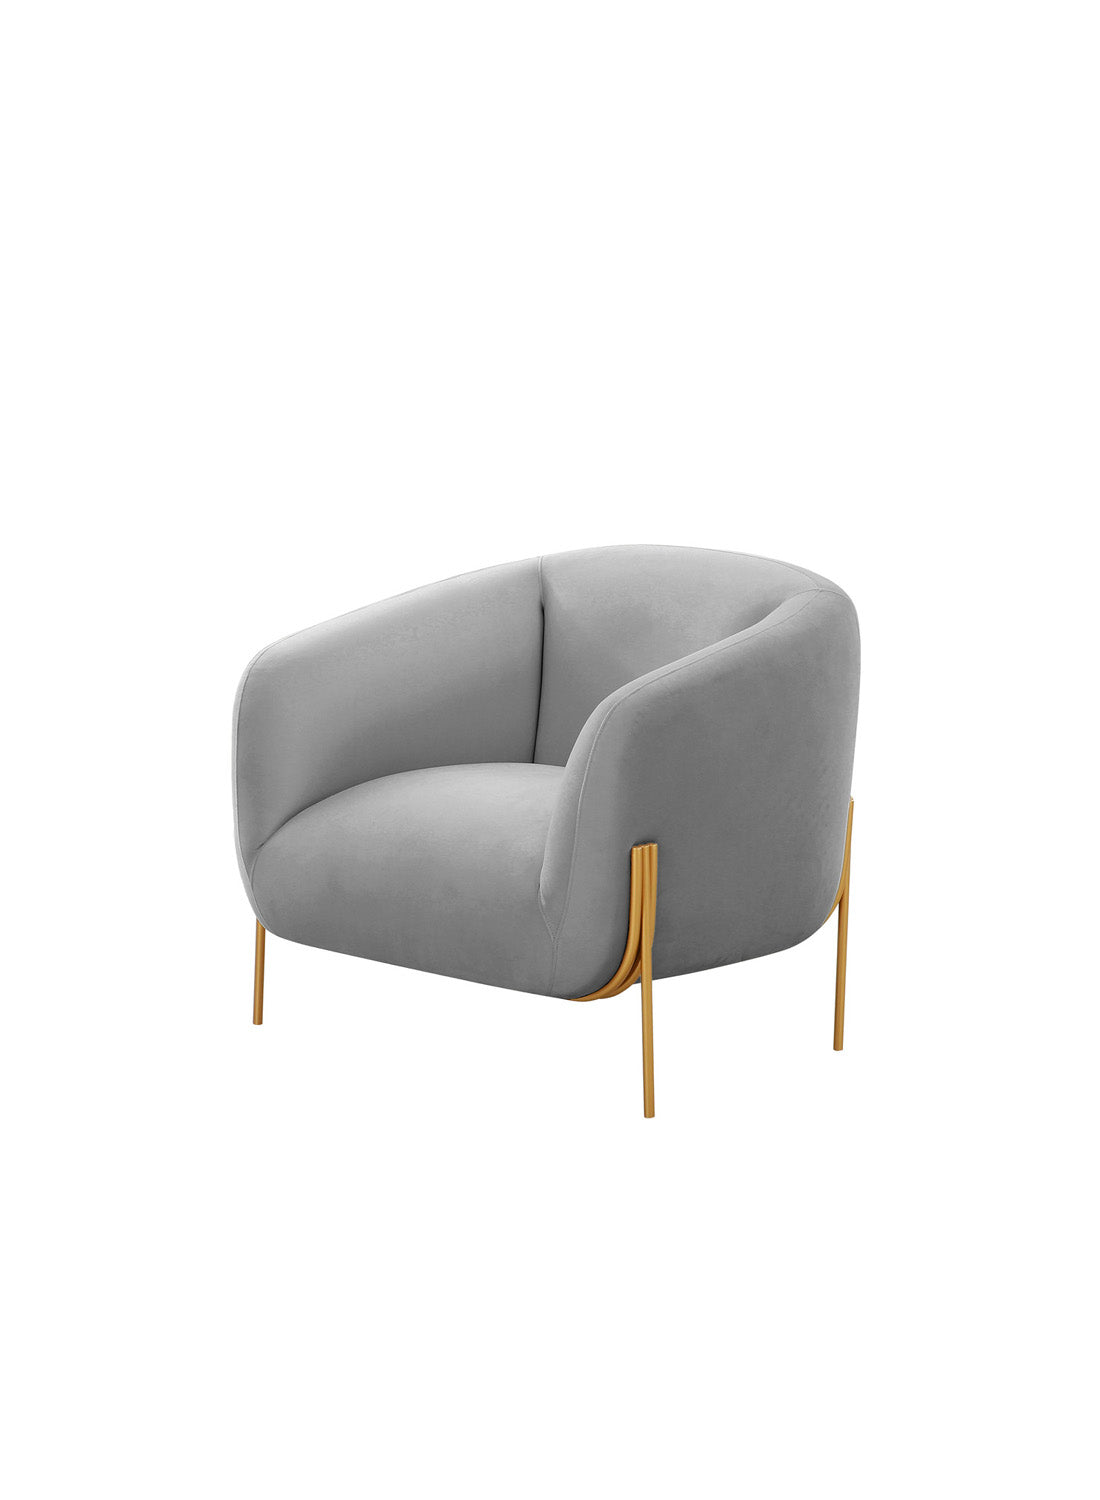 Kandria Velvet Accent Chair, gray